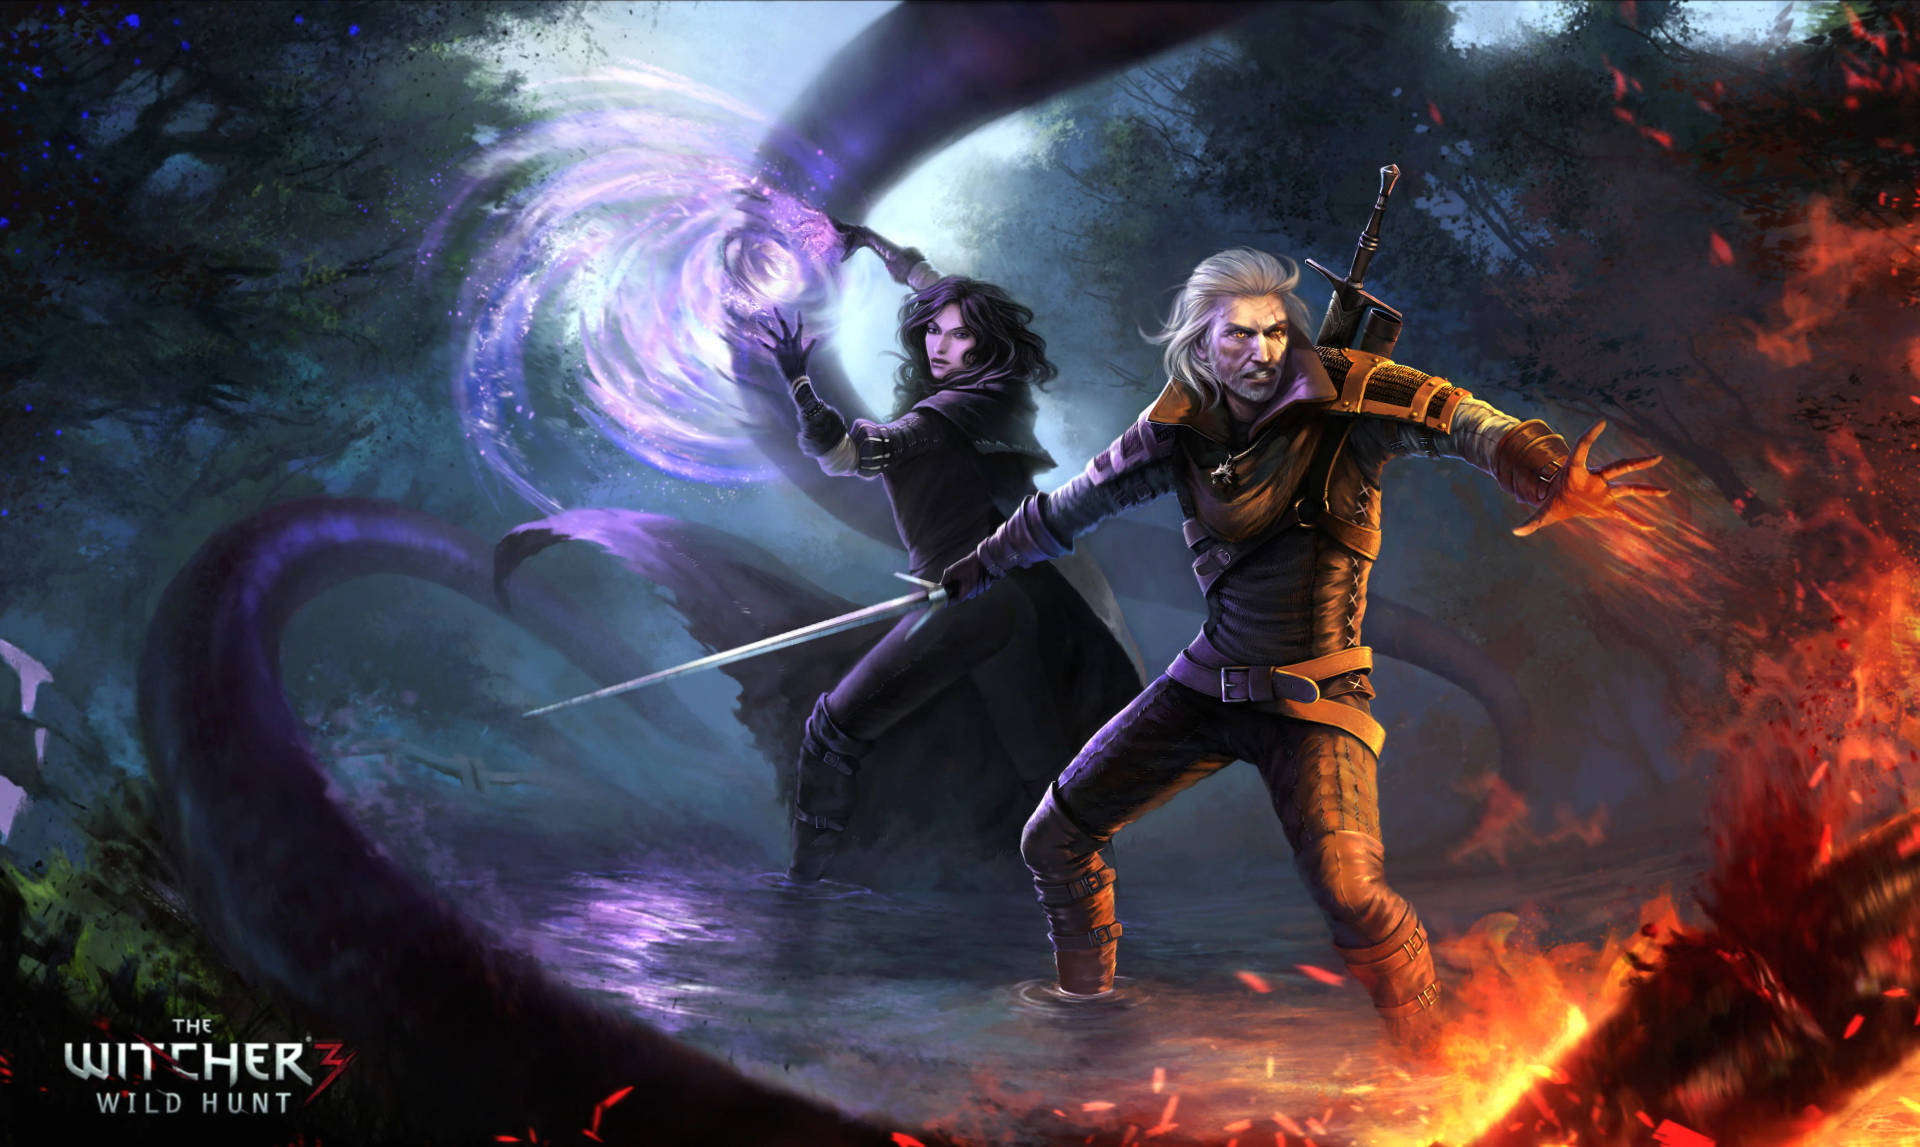 Witcher3 4k Yennefer Och Geralt Wallpaper